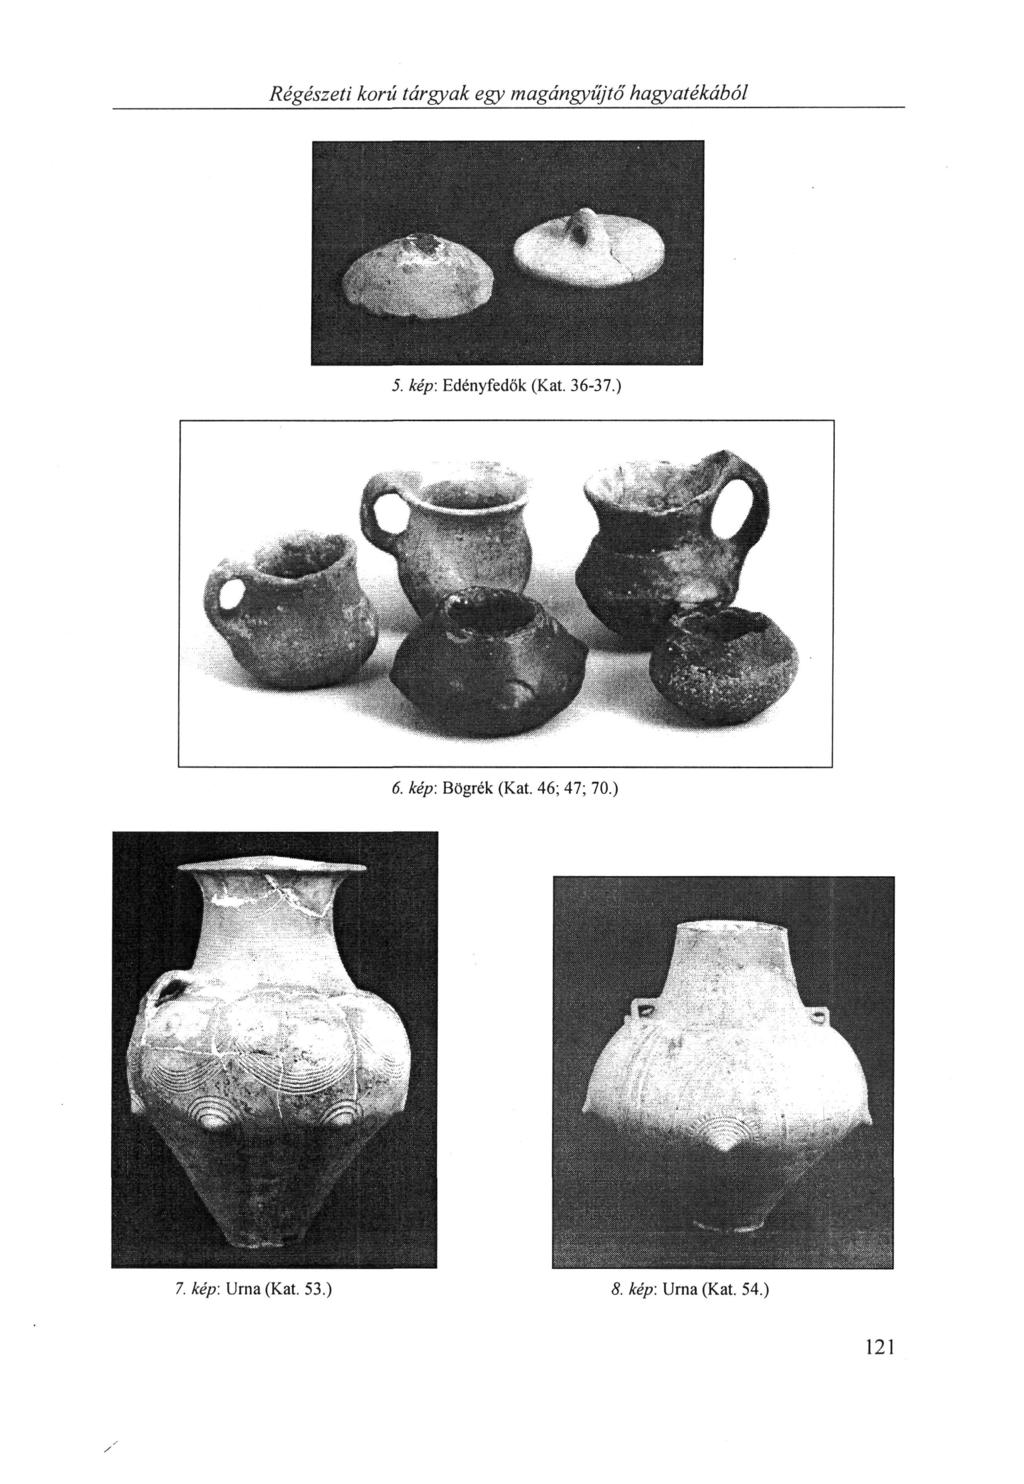 Régészeti korú tárgyak egy magángyűjtő hagyatékából 5. kép: Edényfedők (Kat. 36-37.